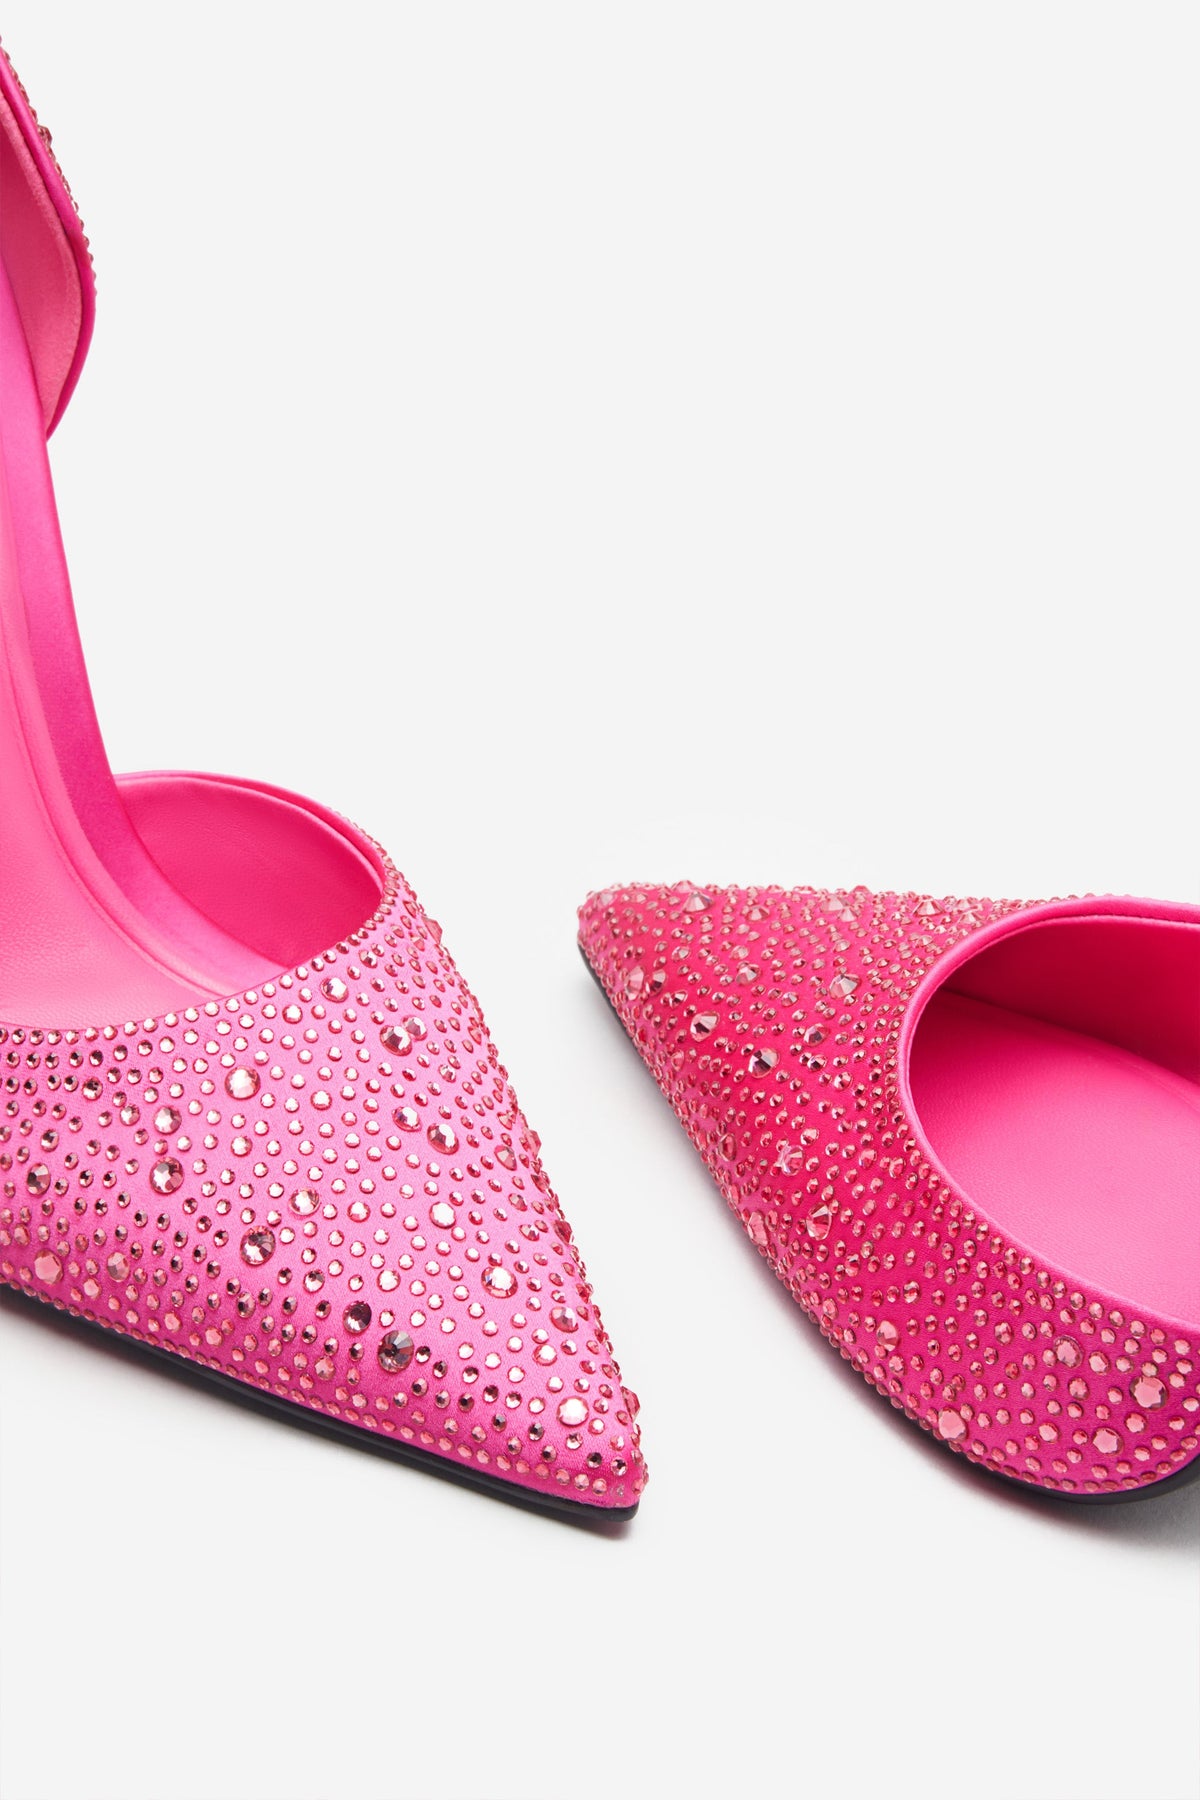 INDYA SOFT PINK PATENT Stilettos | Buy Women's Online | Novo Shoes NZ